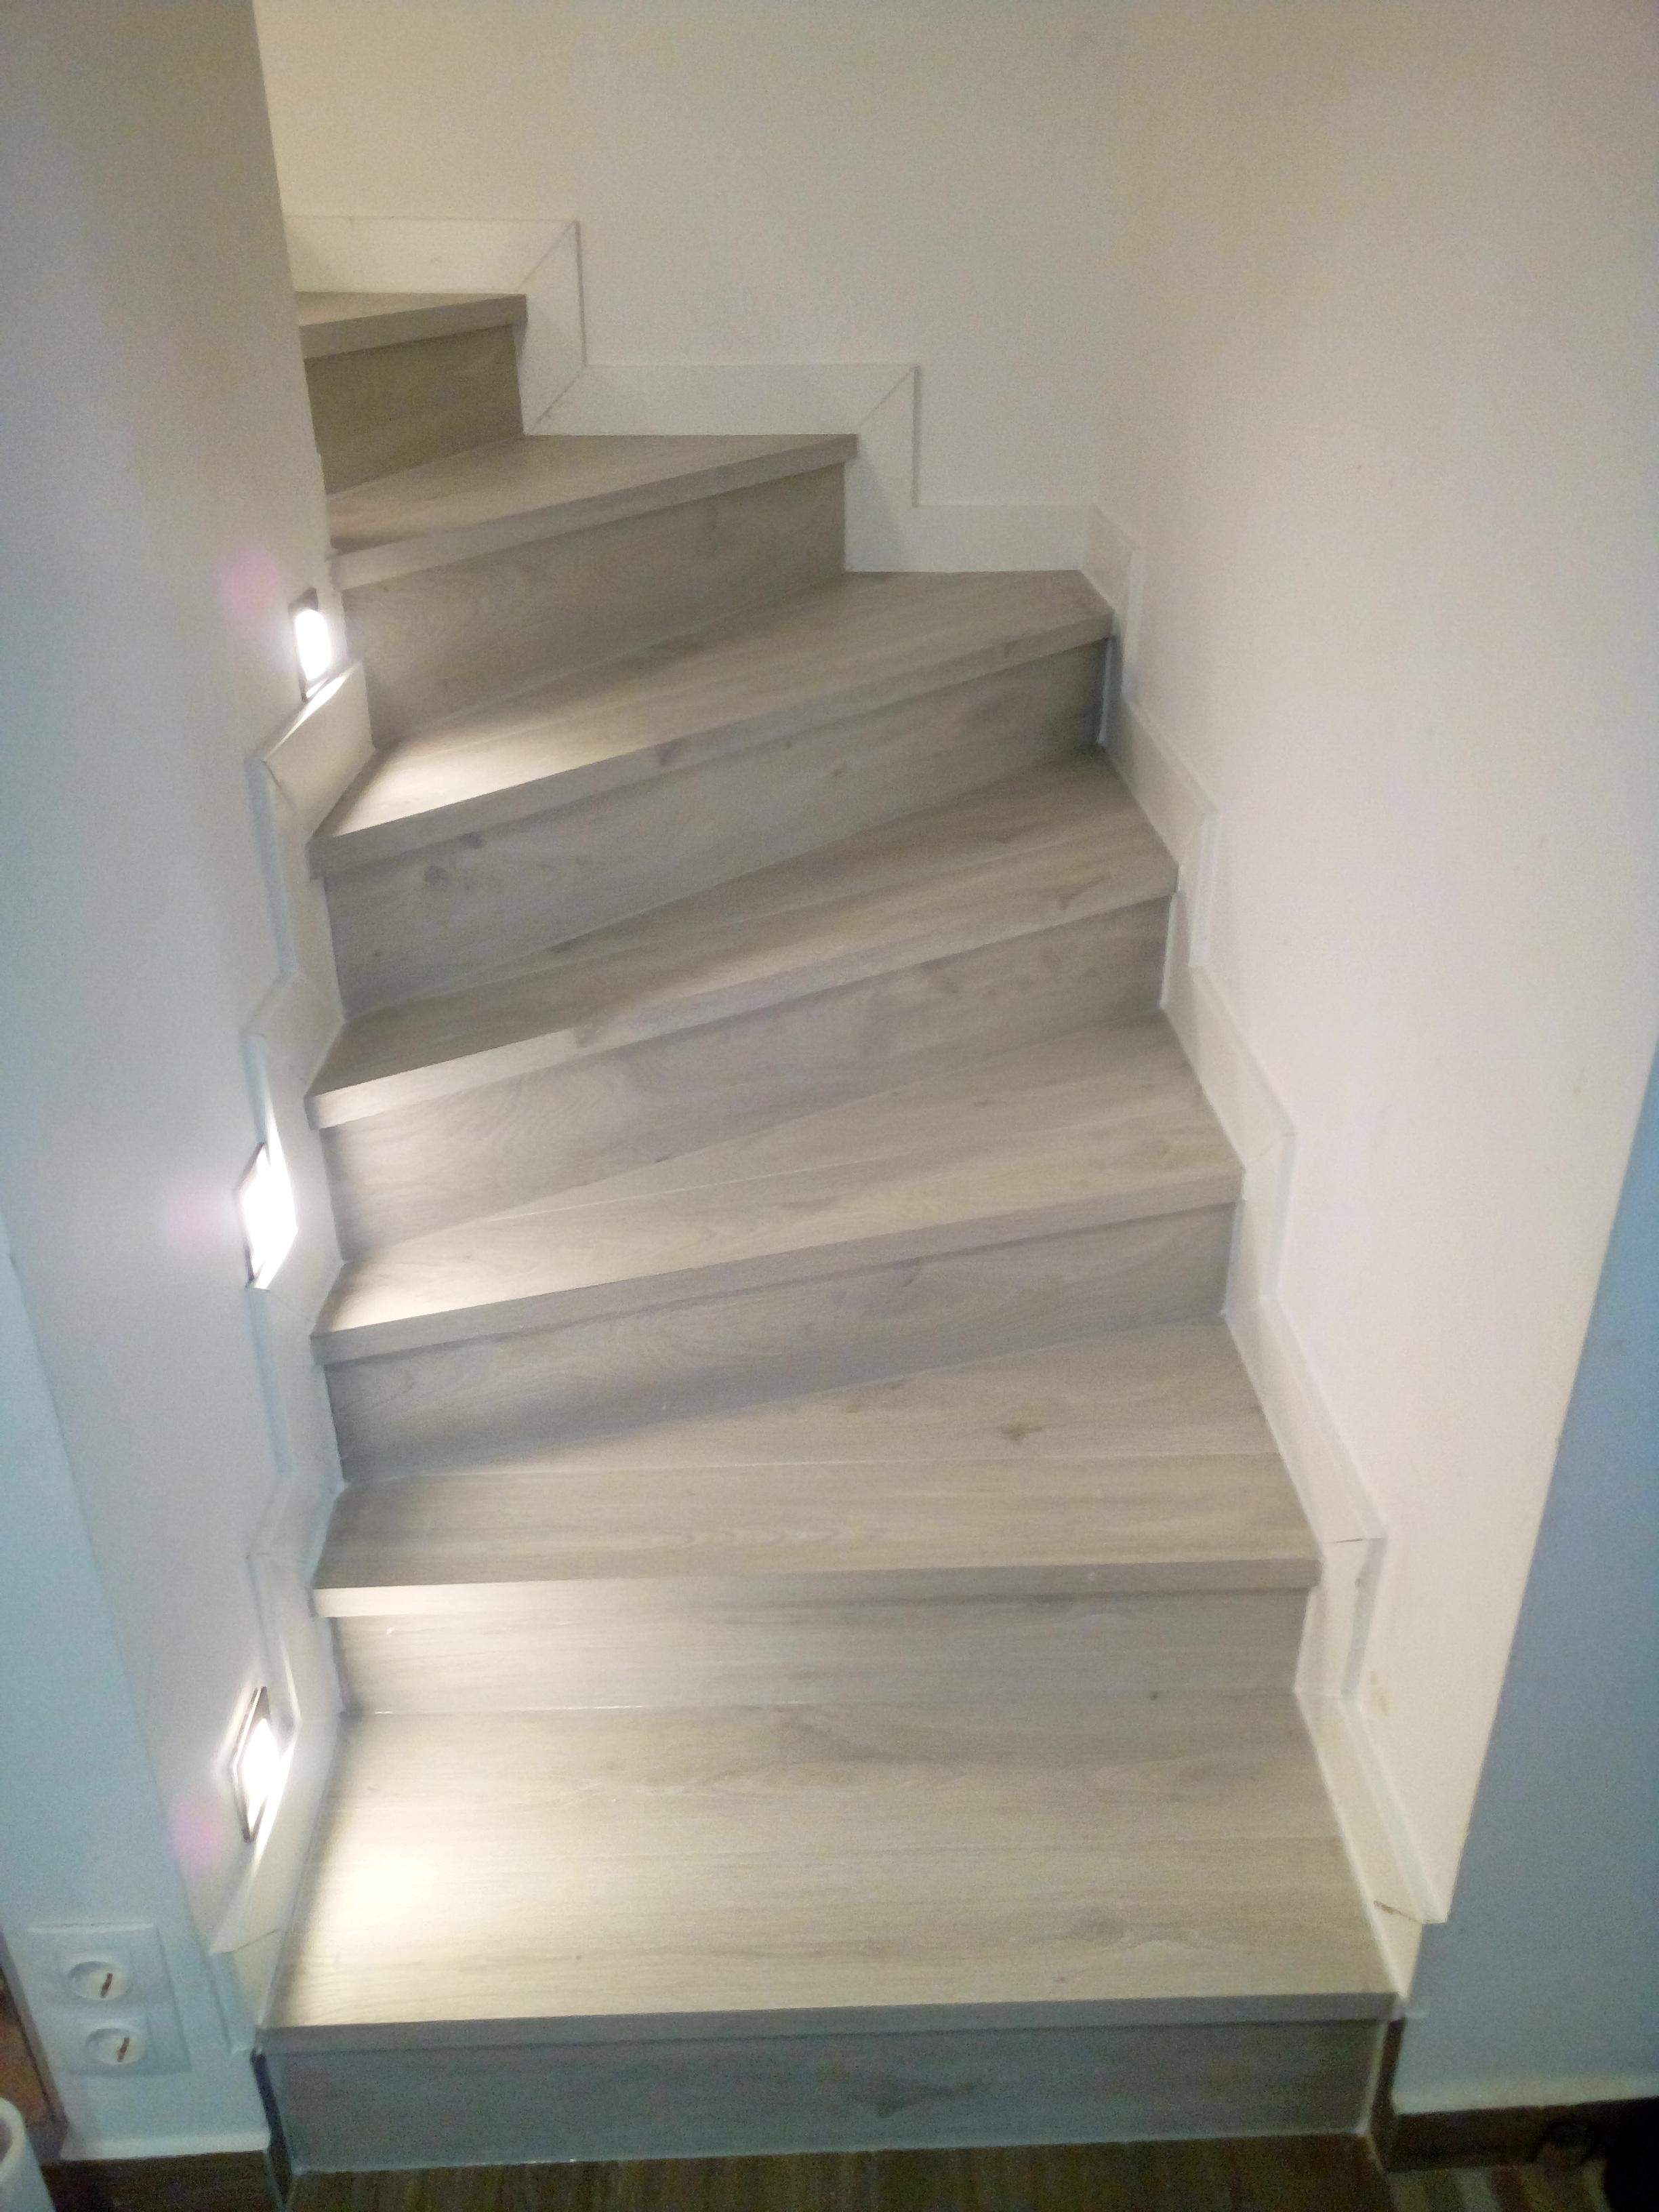 Régi beton lépcső, laminált padlóval burkolva